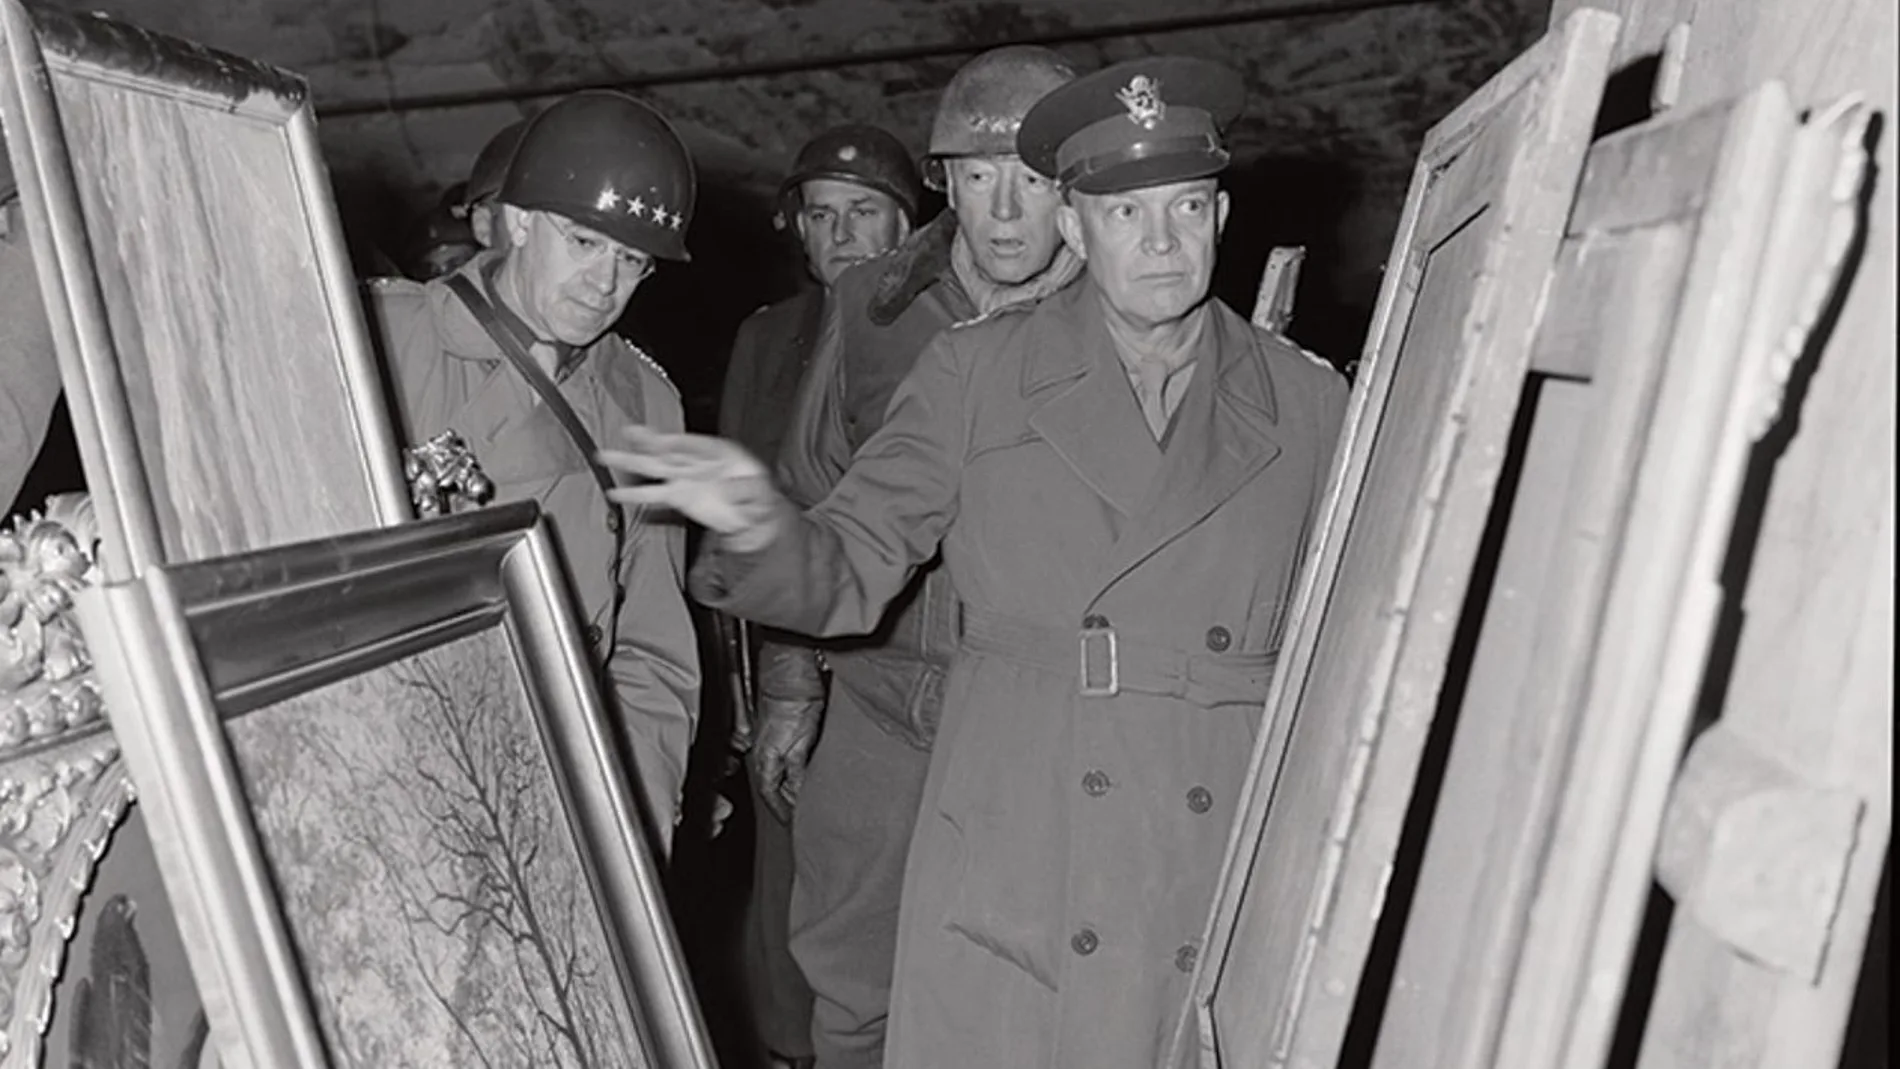 Los generales Dwight D. Eisenhower, Omar N. Bradley y George S. Patton inspeccionando el arte encontrado en la mina de sal de Merkers el 12 de abril de 1945